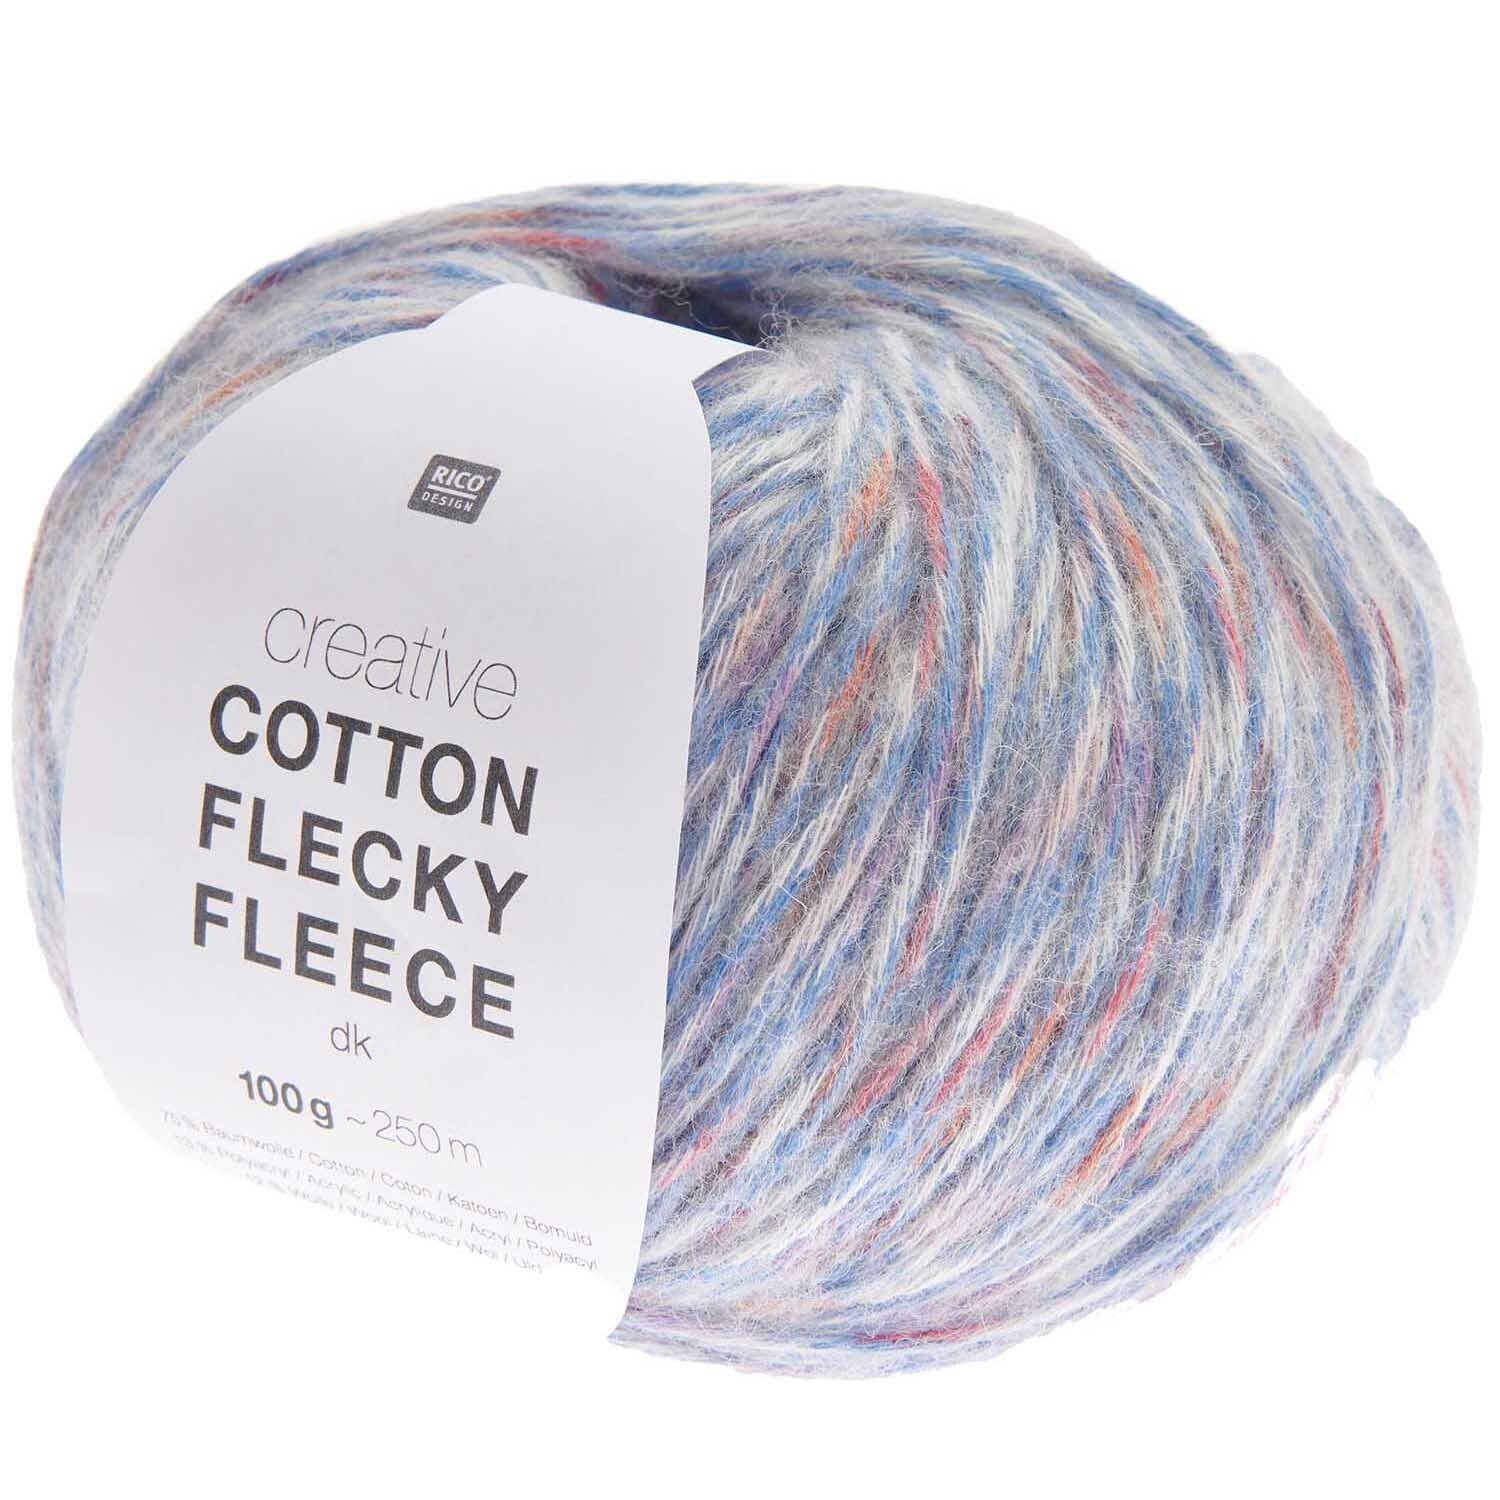 Creative Cotton Flecky Fleece dk